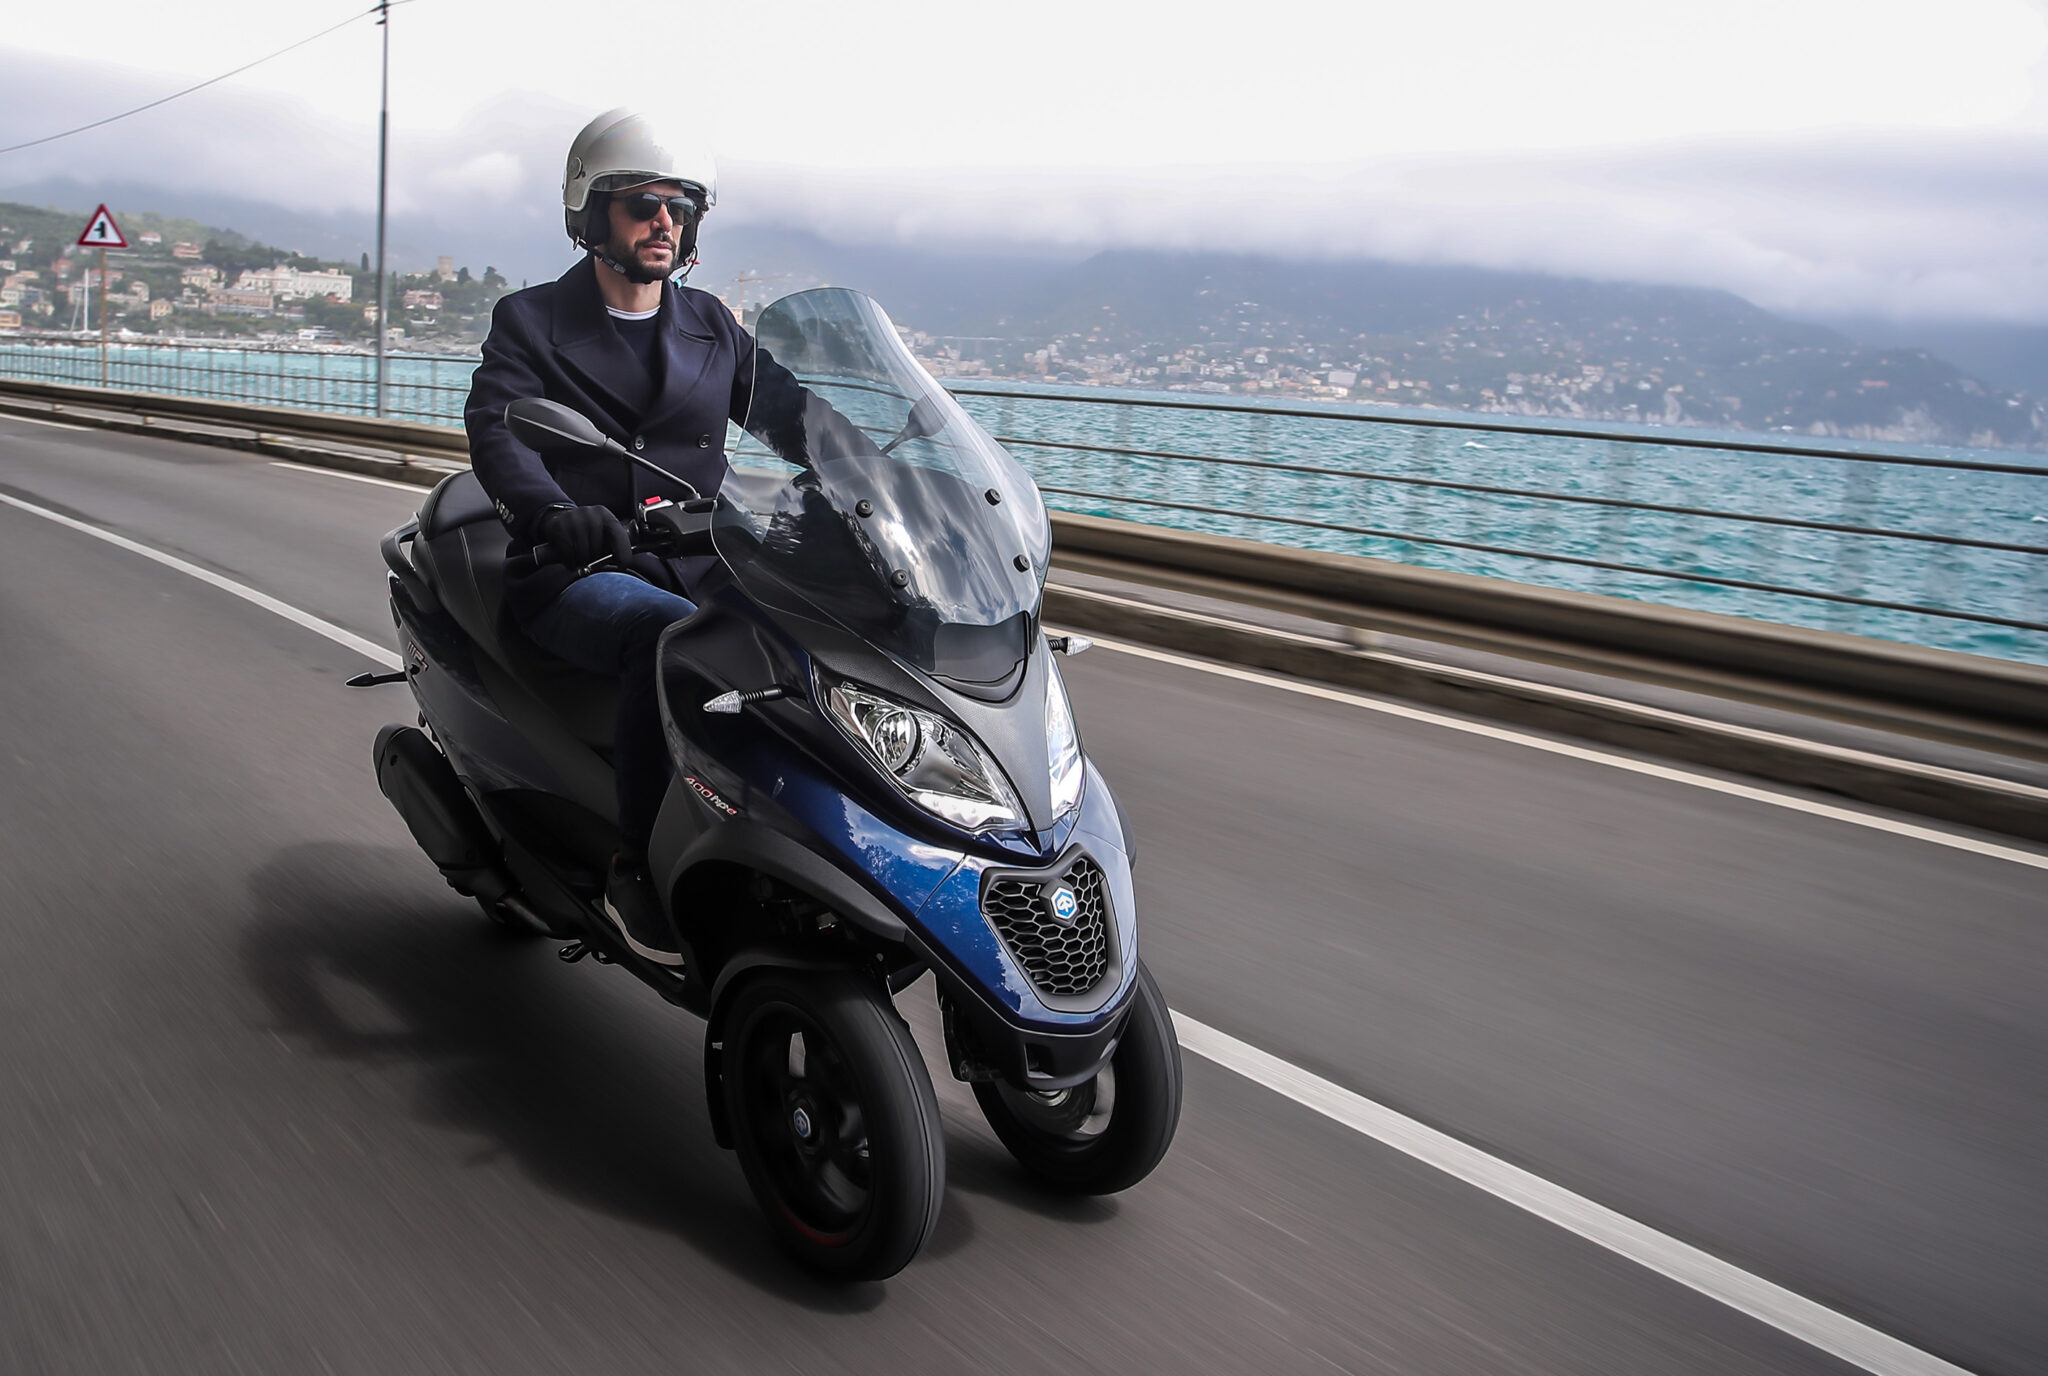 Autoliv en Piaggio werken aan airbagsysteem voor scooters en motorfietsen